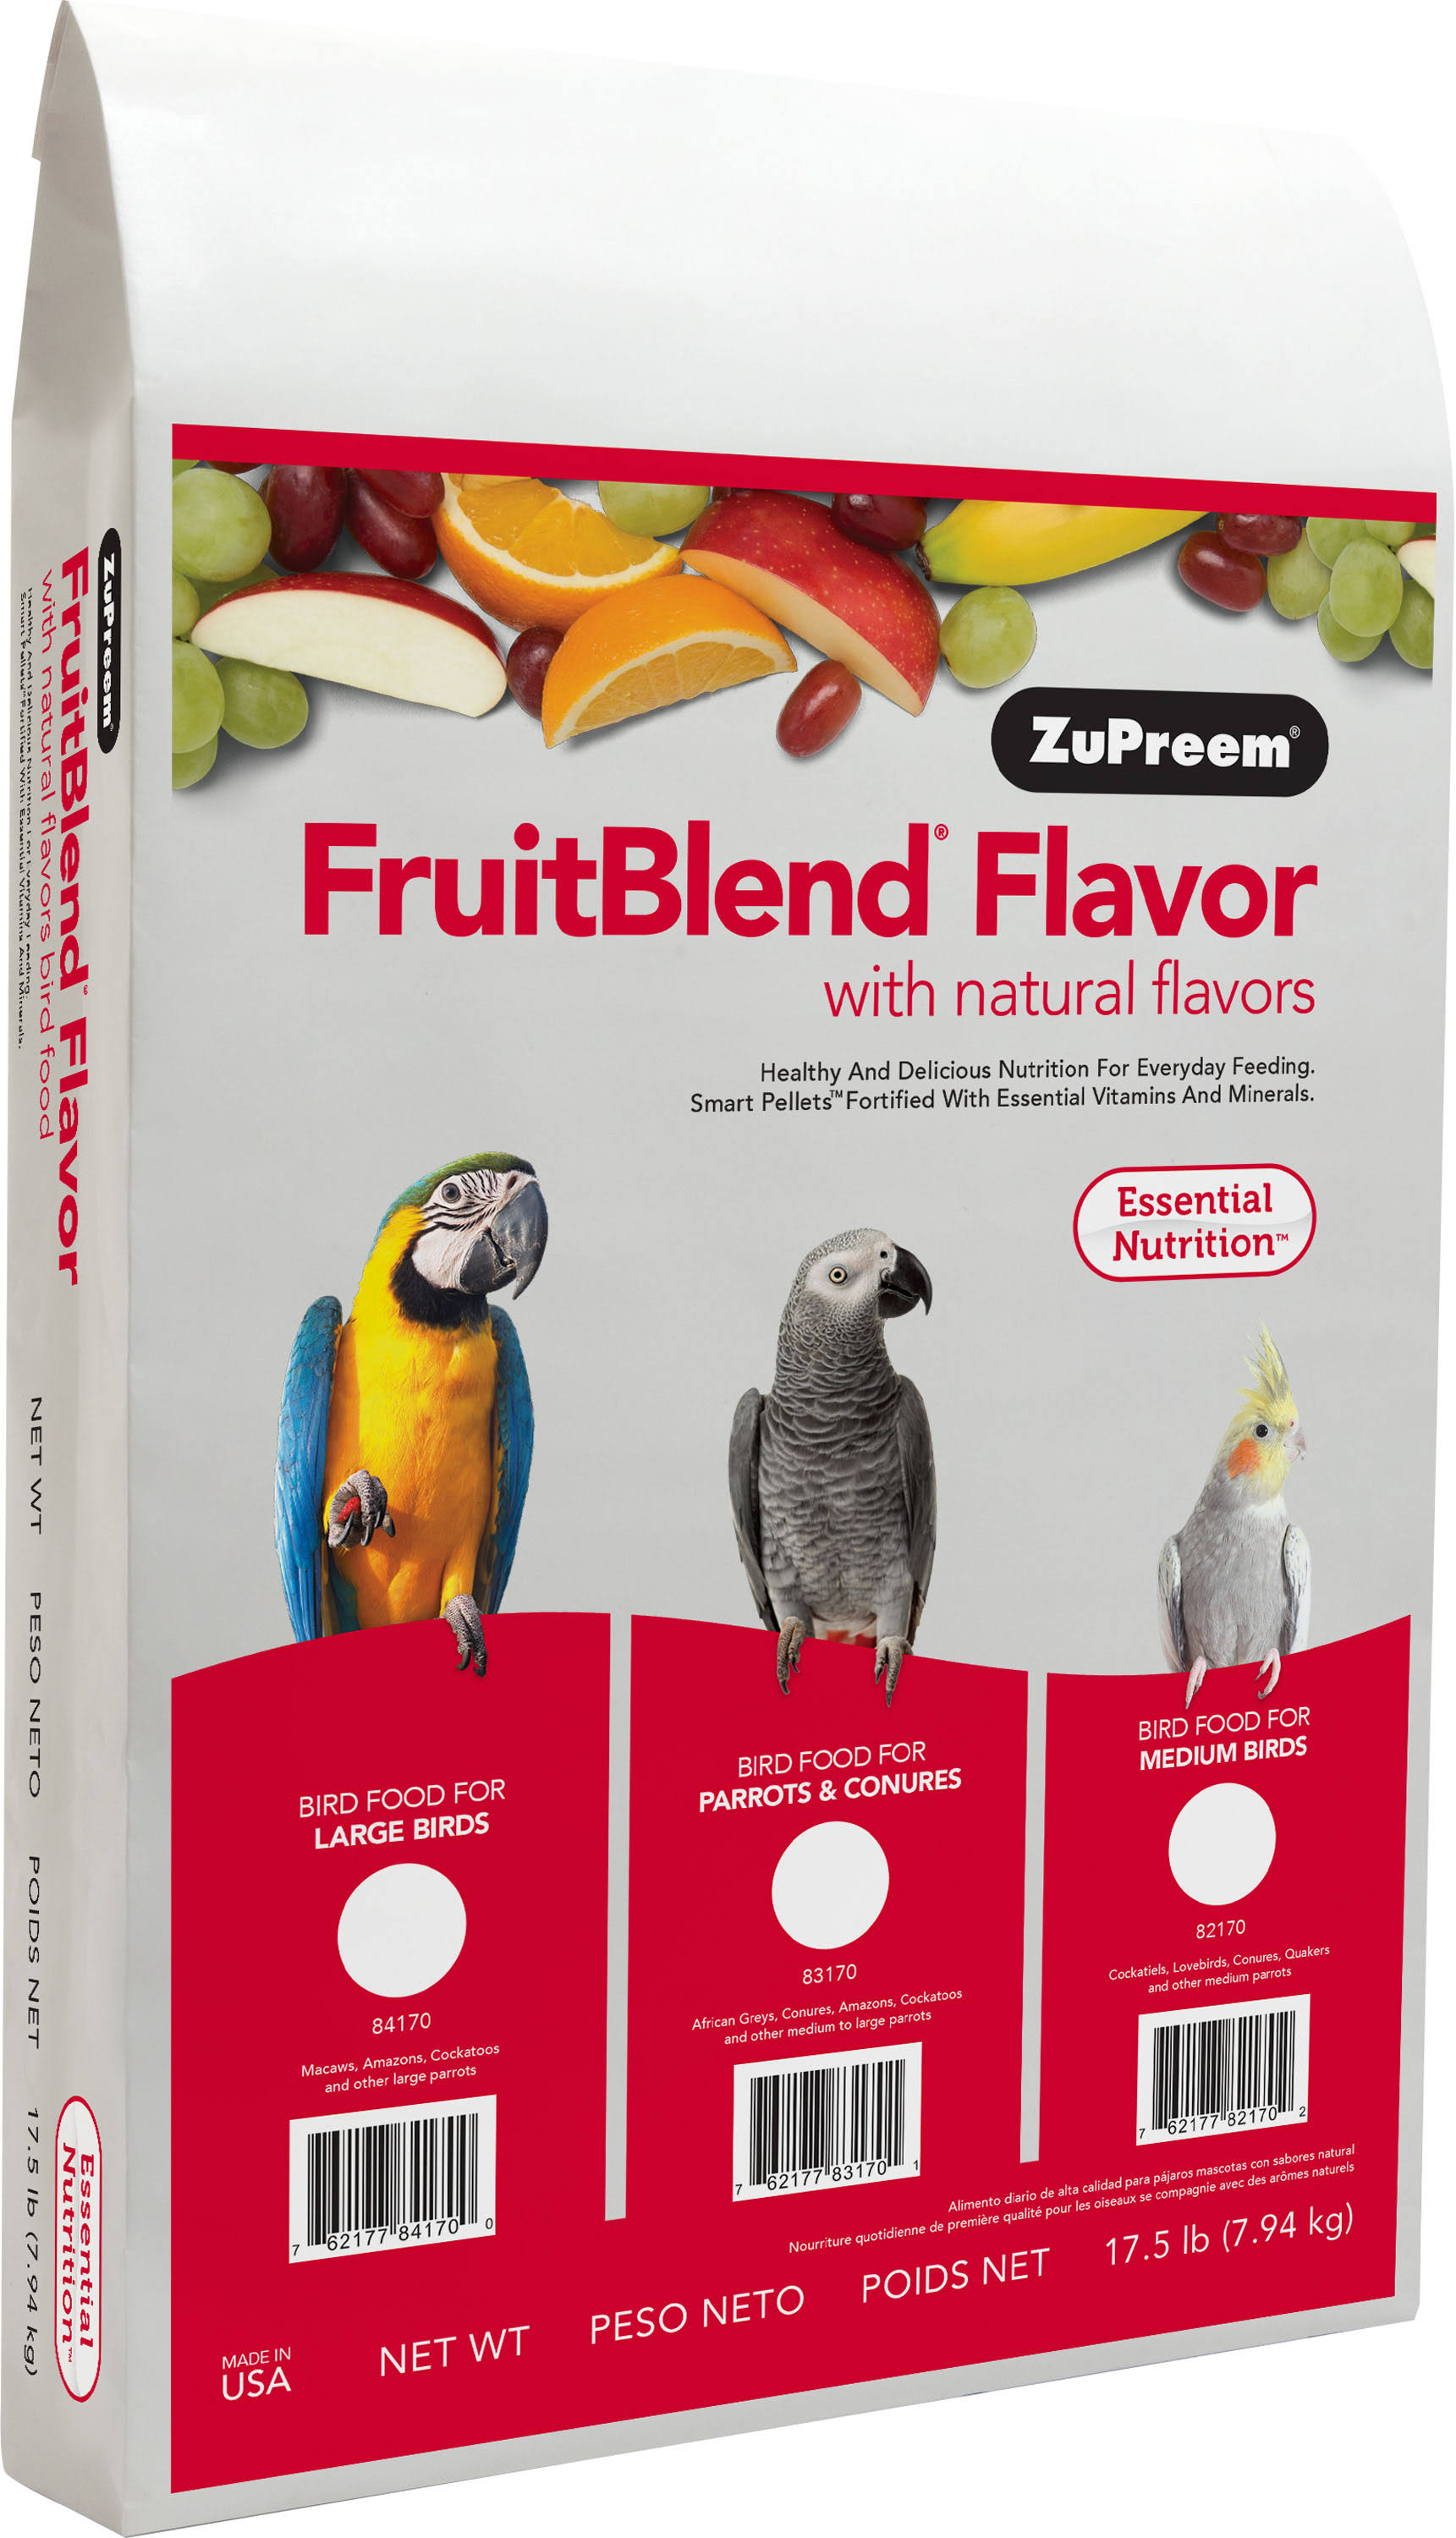 Zupreem Parrot Food - Fruit Blend